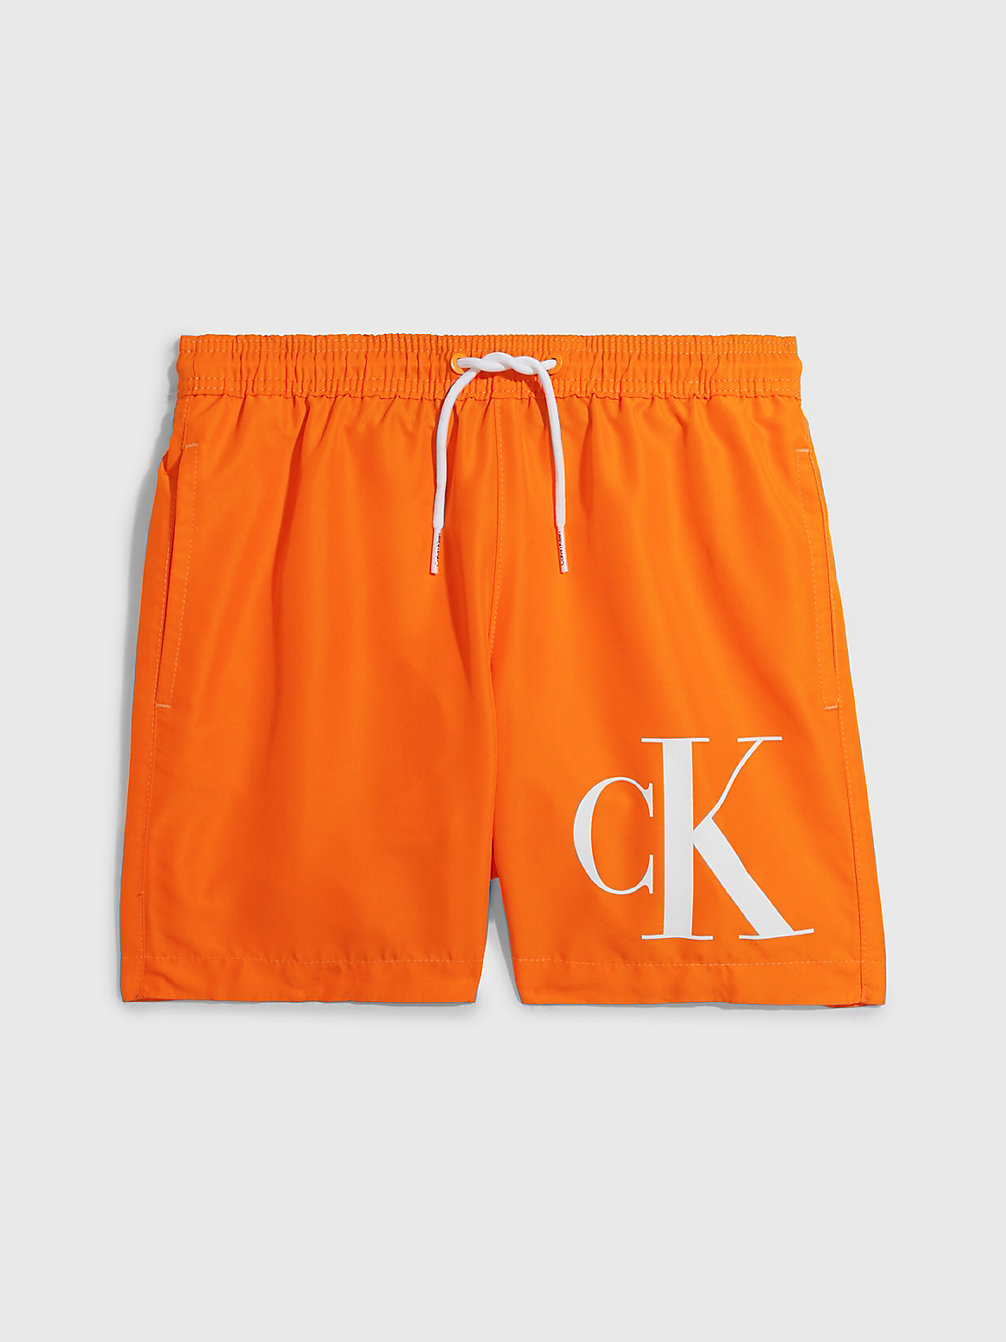 SUN KISSED ORANGE > Jongenszwemshorts - CK Monogram > undefined jongens - Calvin Klein